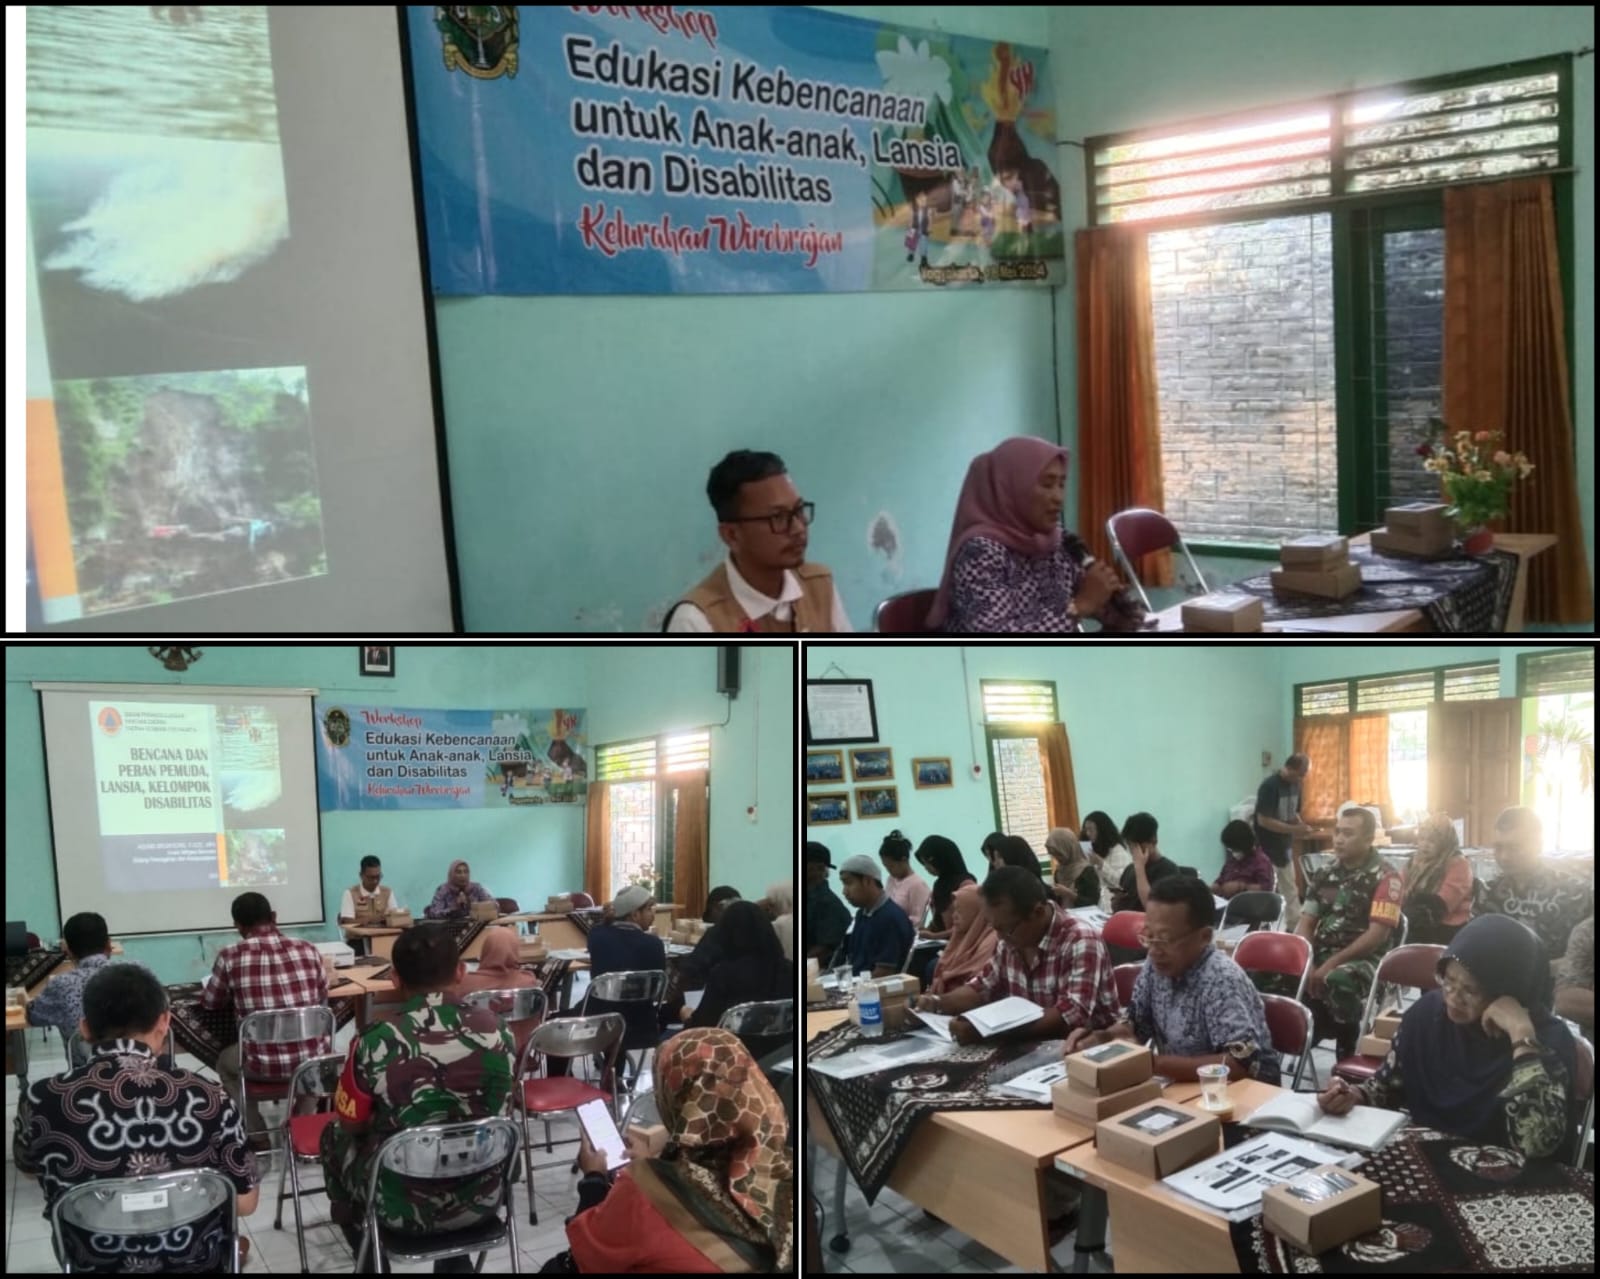 Workshop Edukasi Kebencanaan Untuk Anak-Anak, Lansia, dan Disabilitas di Kelurahan Wirobrajan